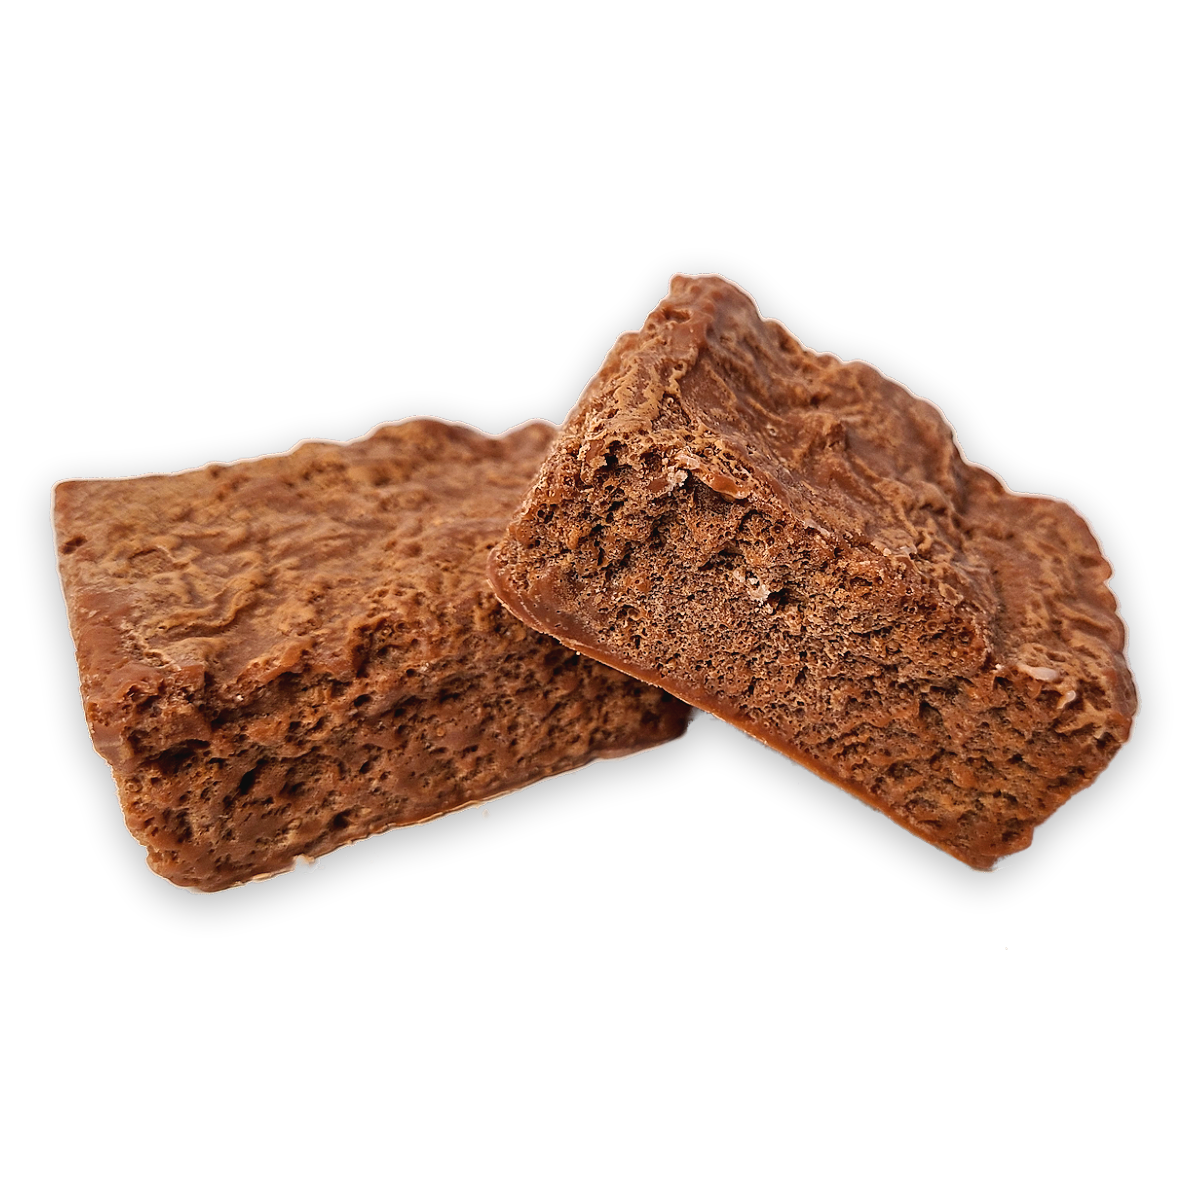 Fudge Brownies - 5.5oz Pack